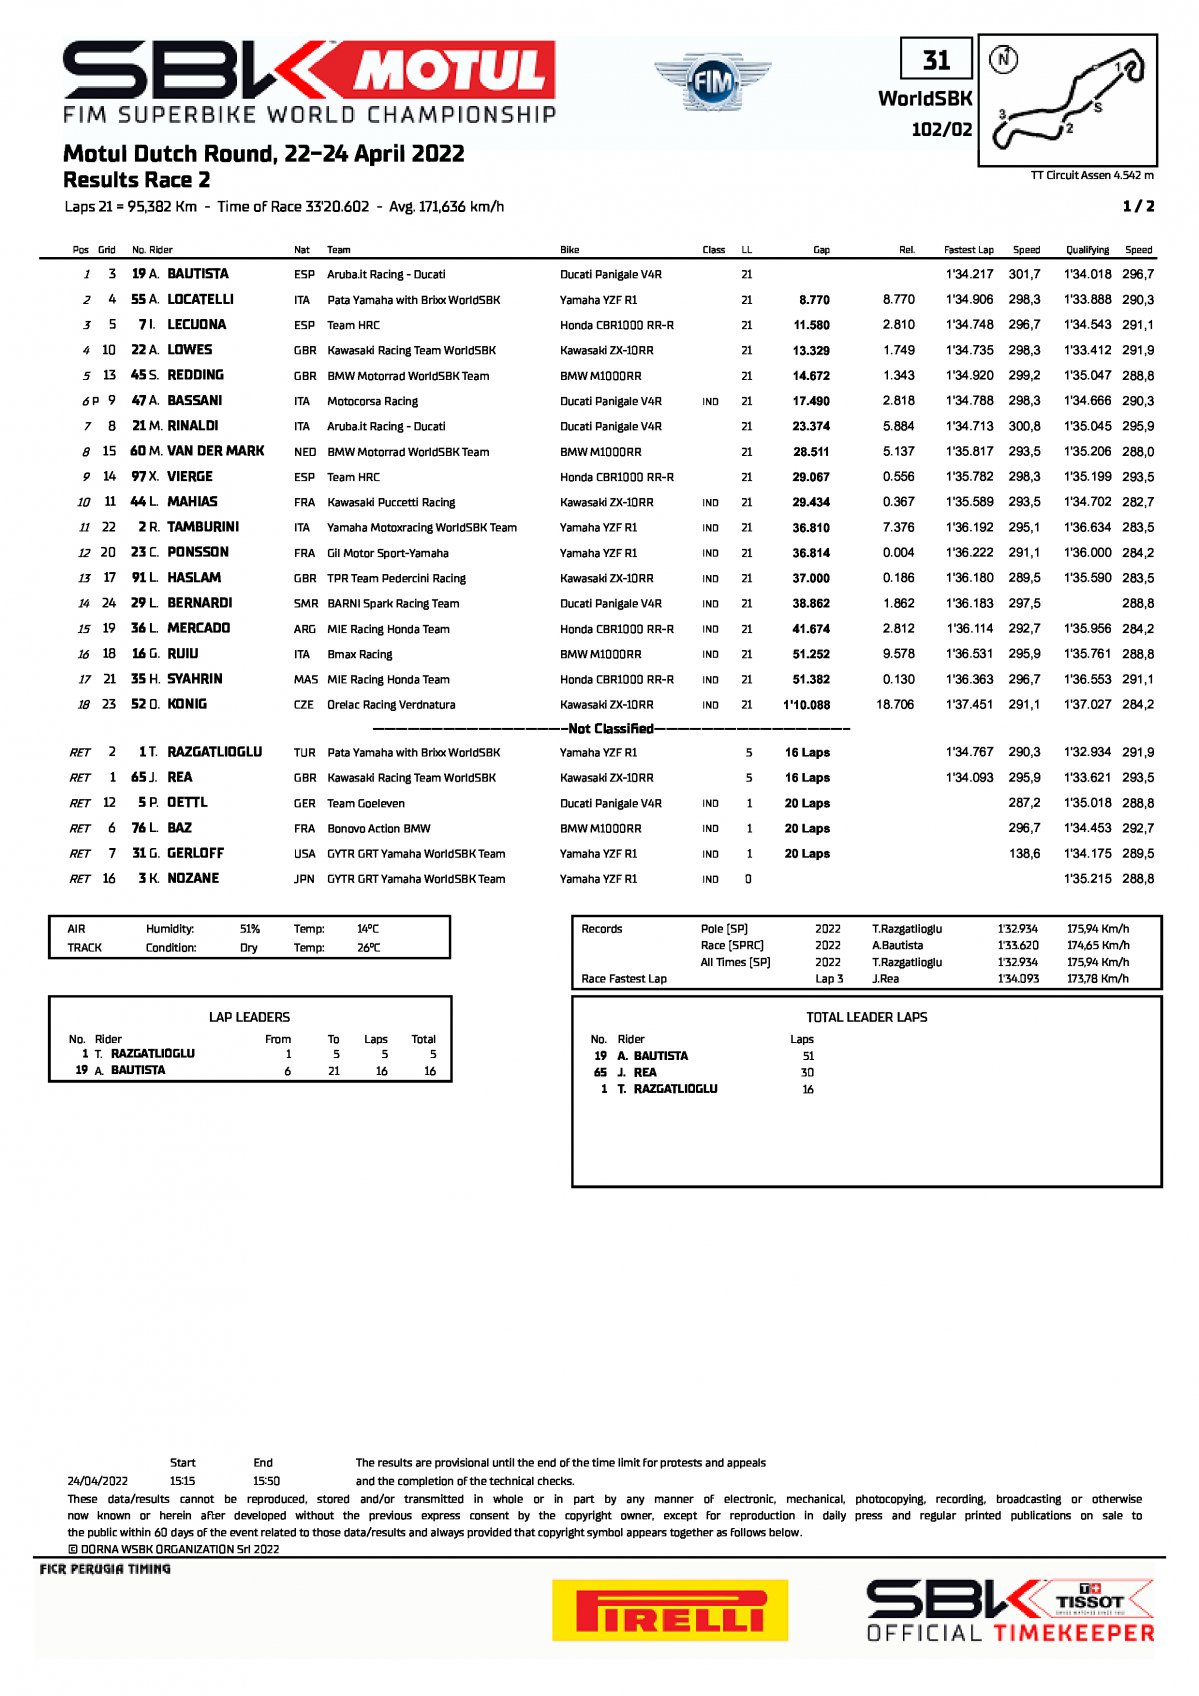 Результаты 2-й гонки NLDWorldSBK, TT Circuit Assen (24/04/2022)